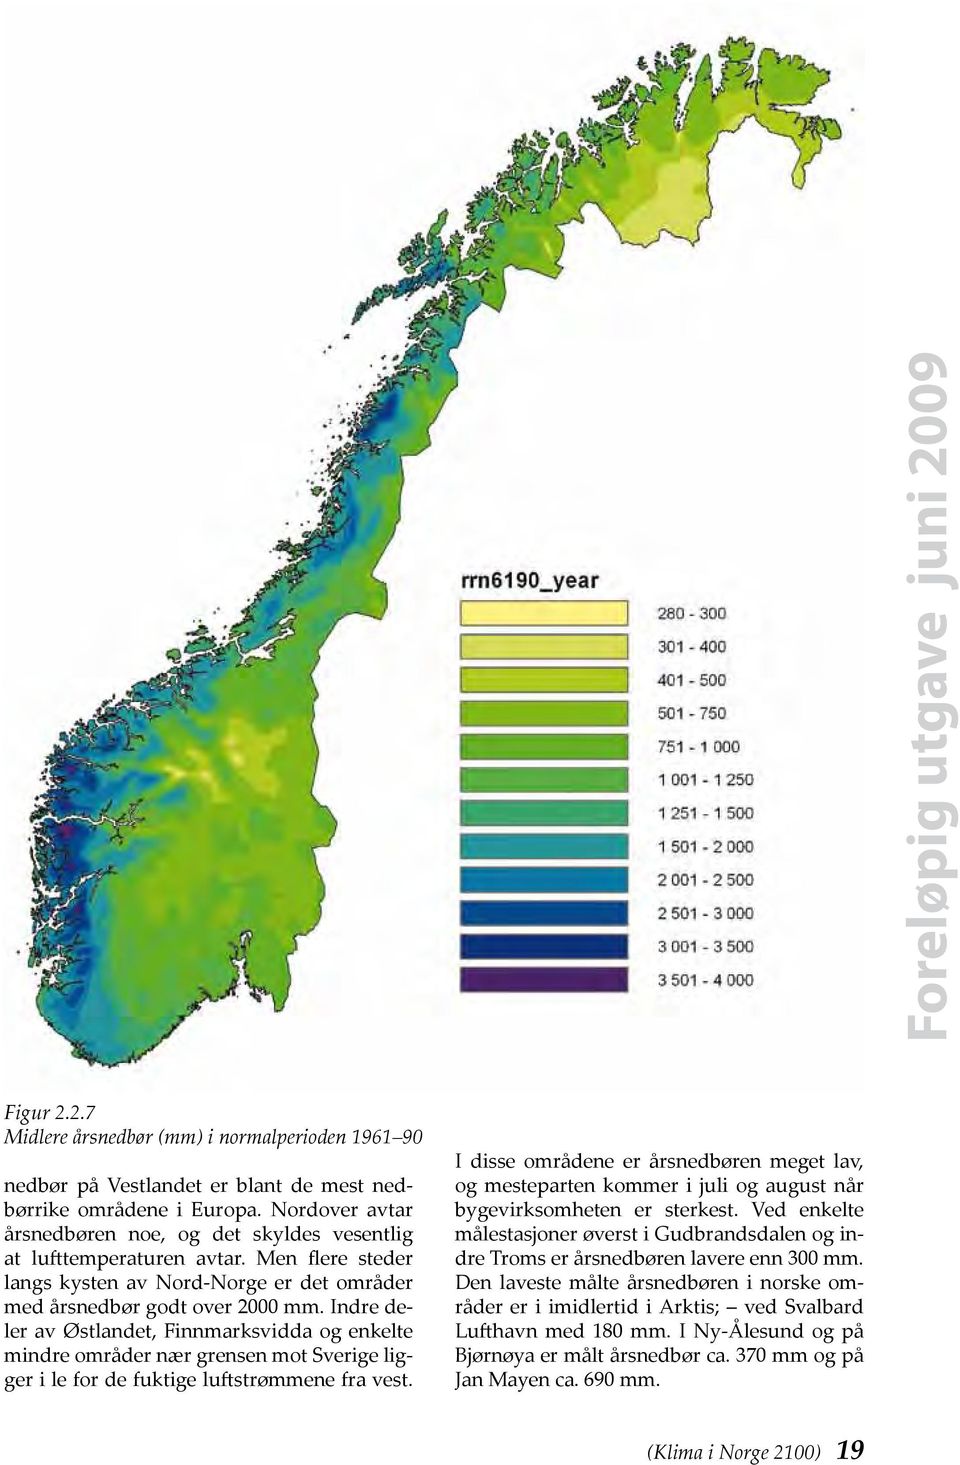 Indre deler av Østlandet, Finnmarksvidda og enkelte mind re områder nær grensen mot Sverige ligger i le for de fuktige luftstrømmene fra vest.